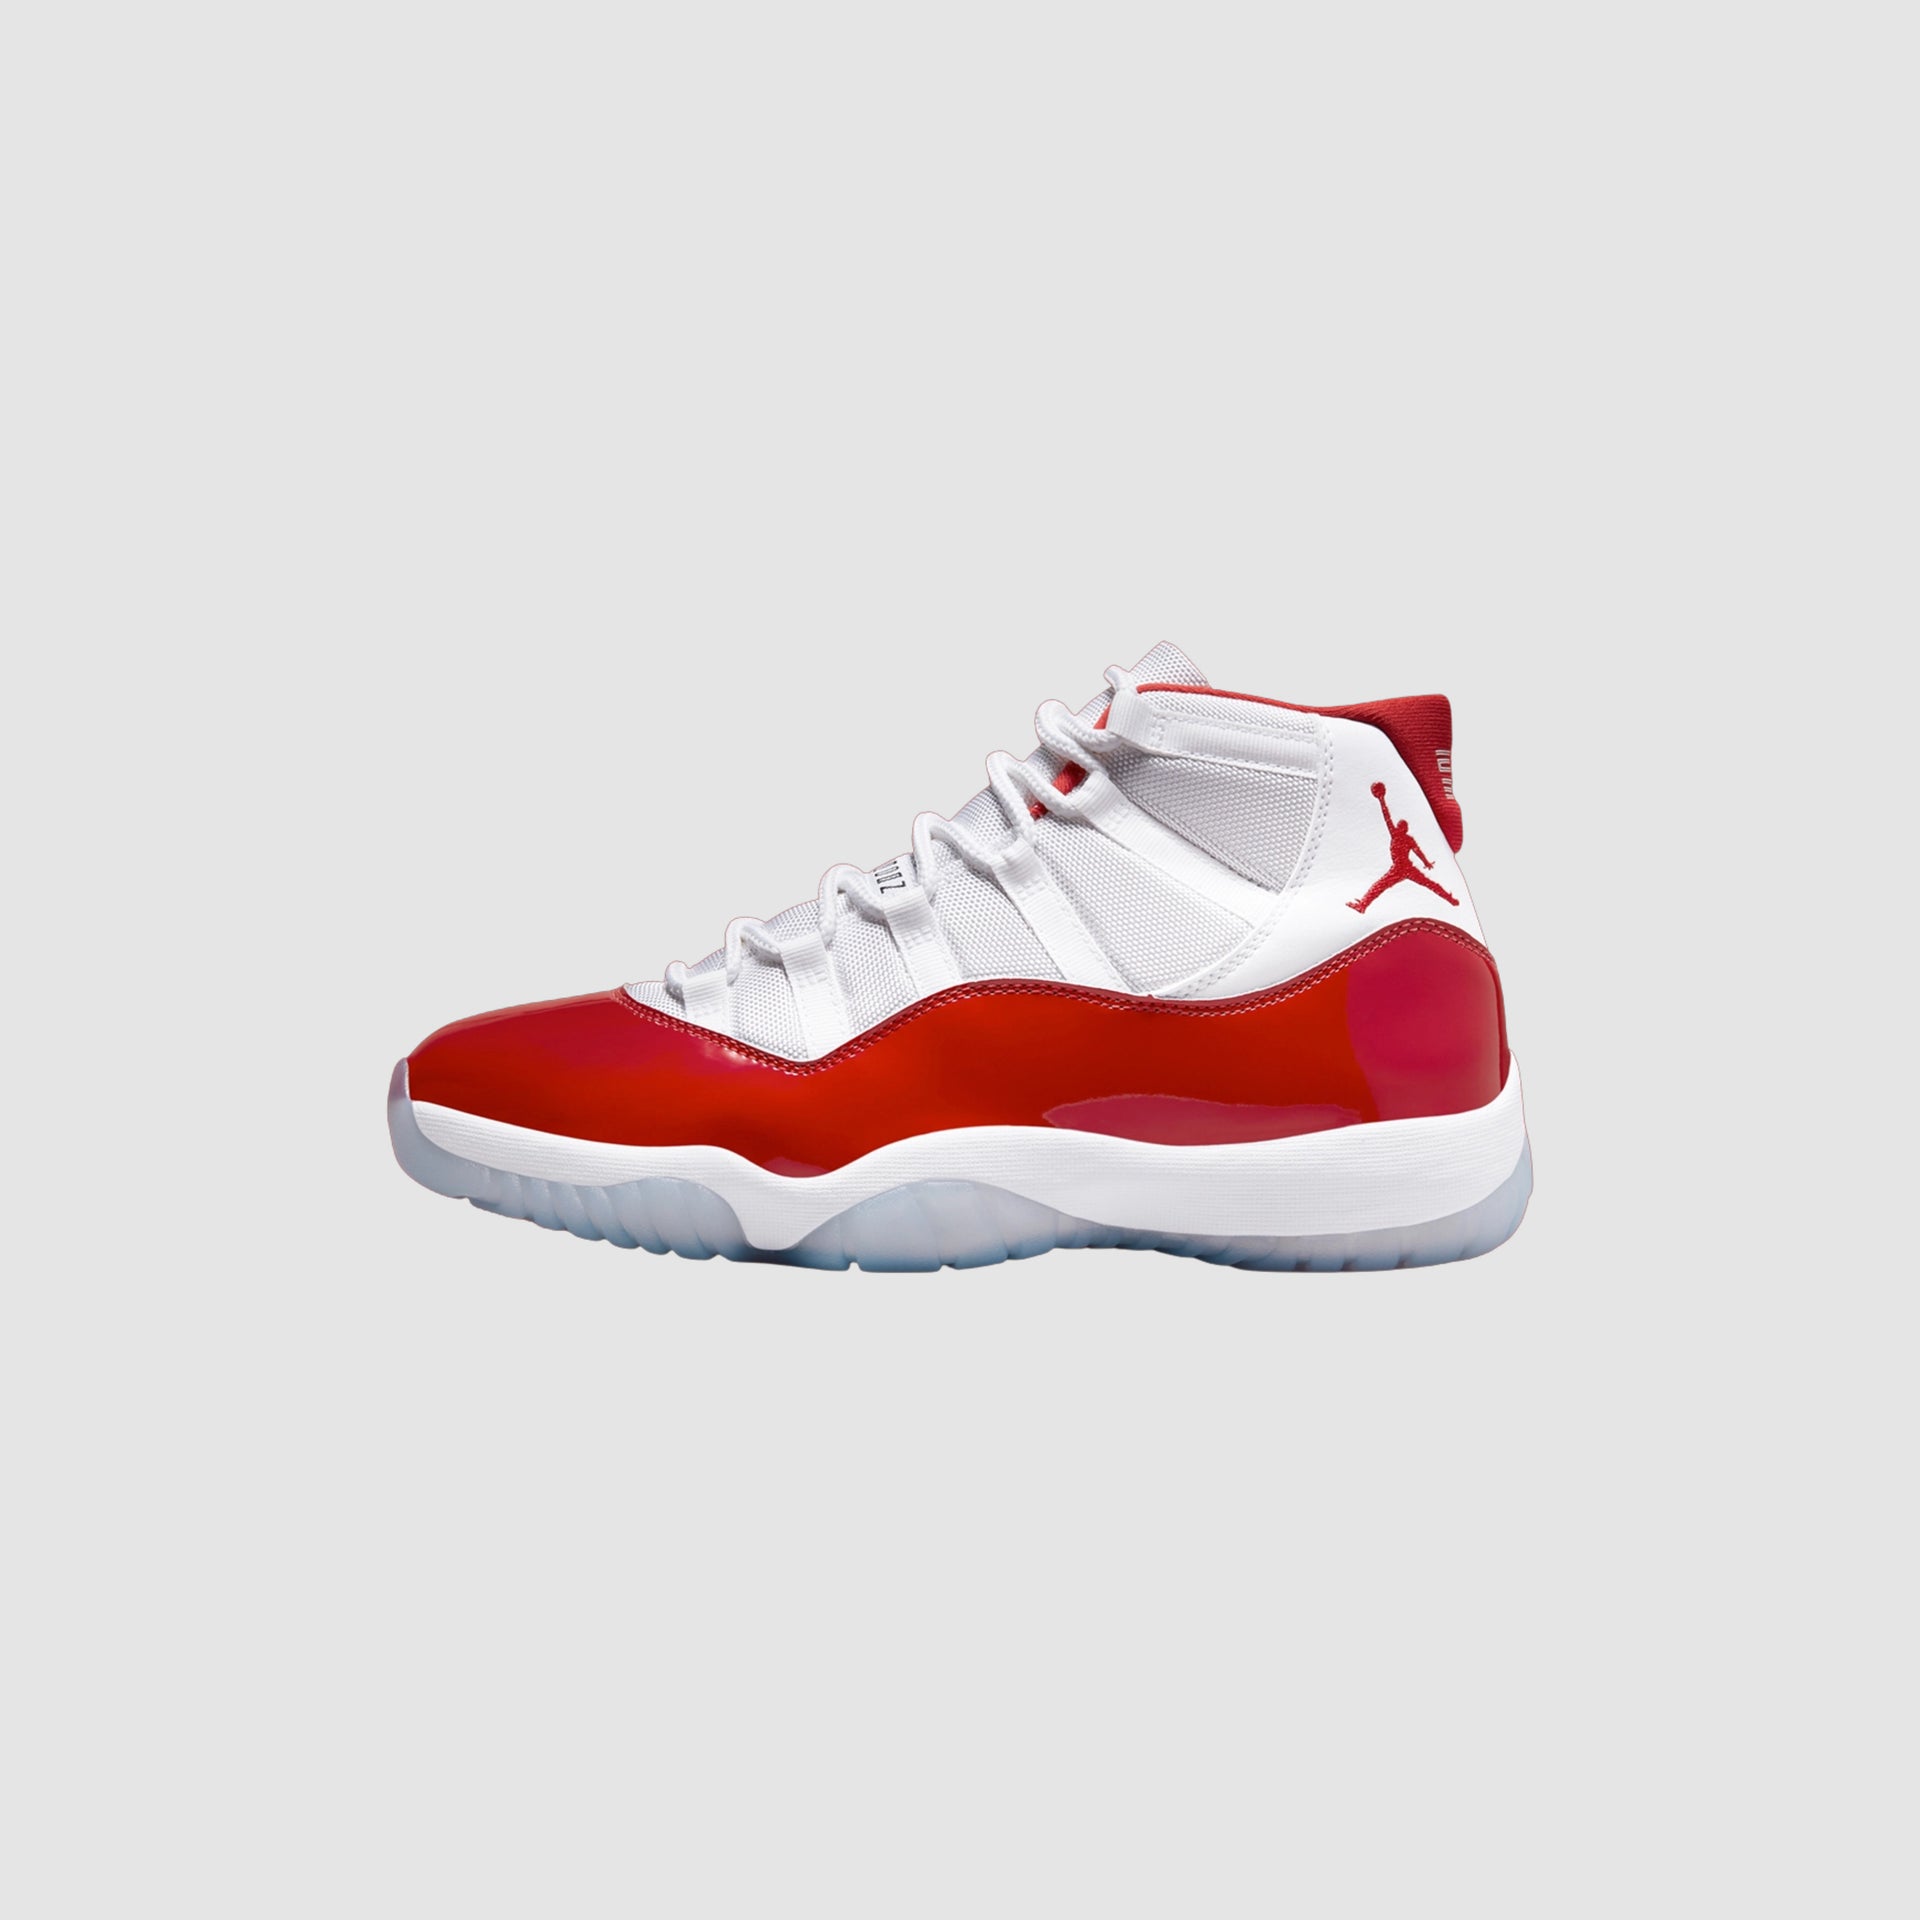 Air Jordan 11 “Cherry”